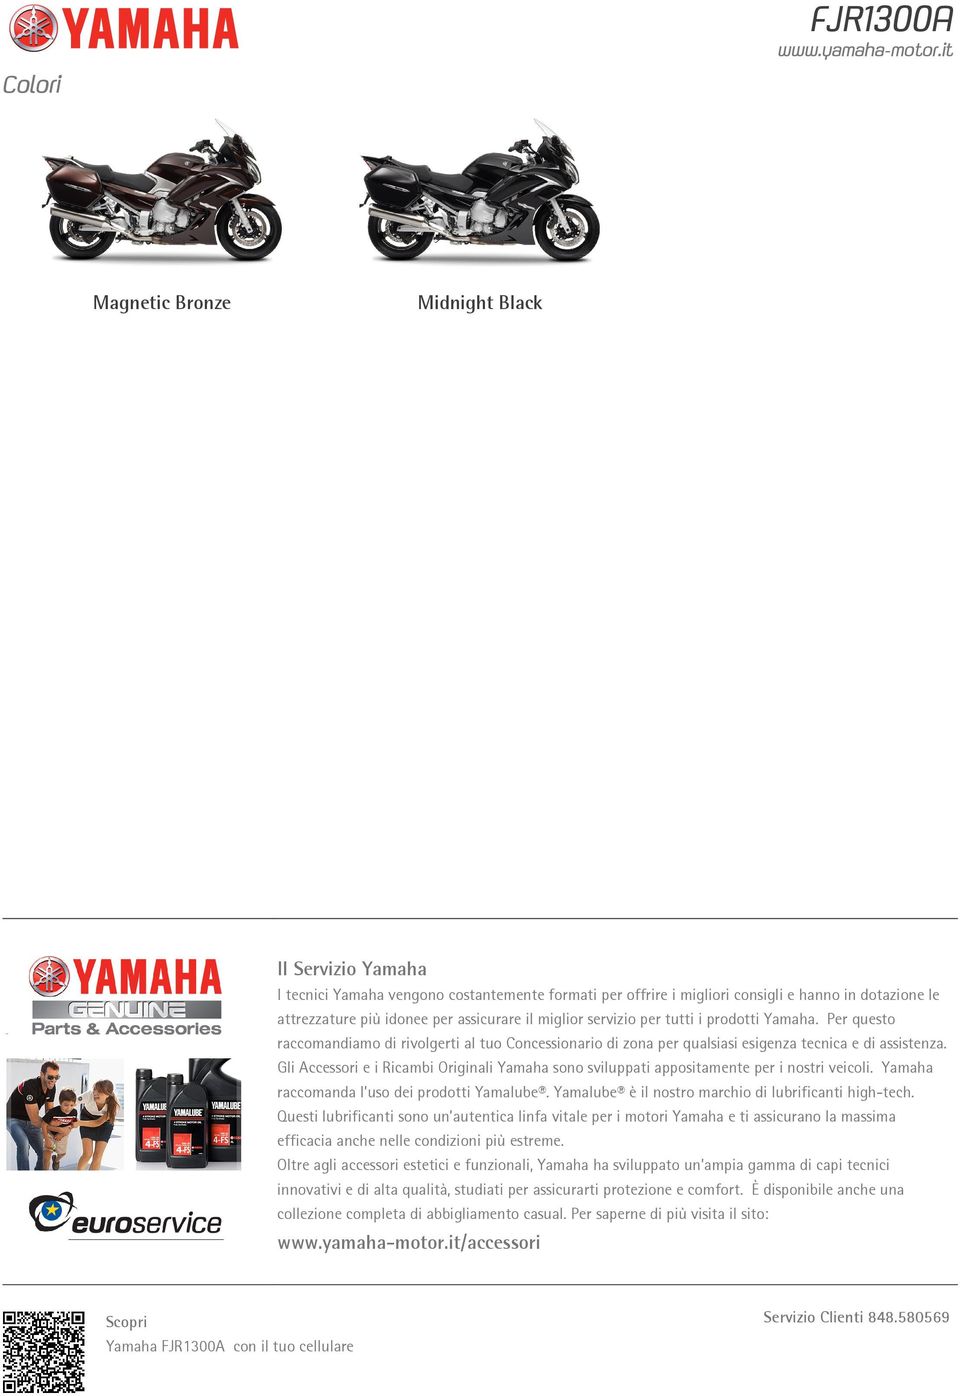 Gli Accessori e i Ricambi Originali Yamaha sono sviluppati appositamente per i nostri veicoli. Yamaha raccomanda l uso dei prodotti Yamalube. Yamalube è il nostro marchio di lubrificanti high-tech.